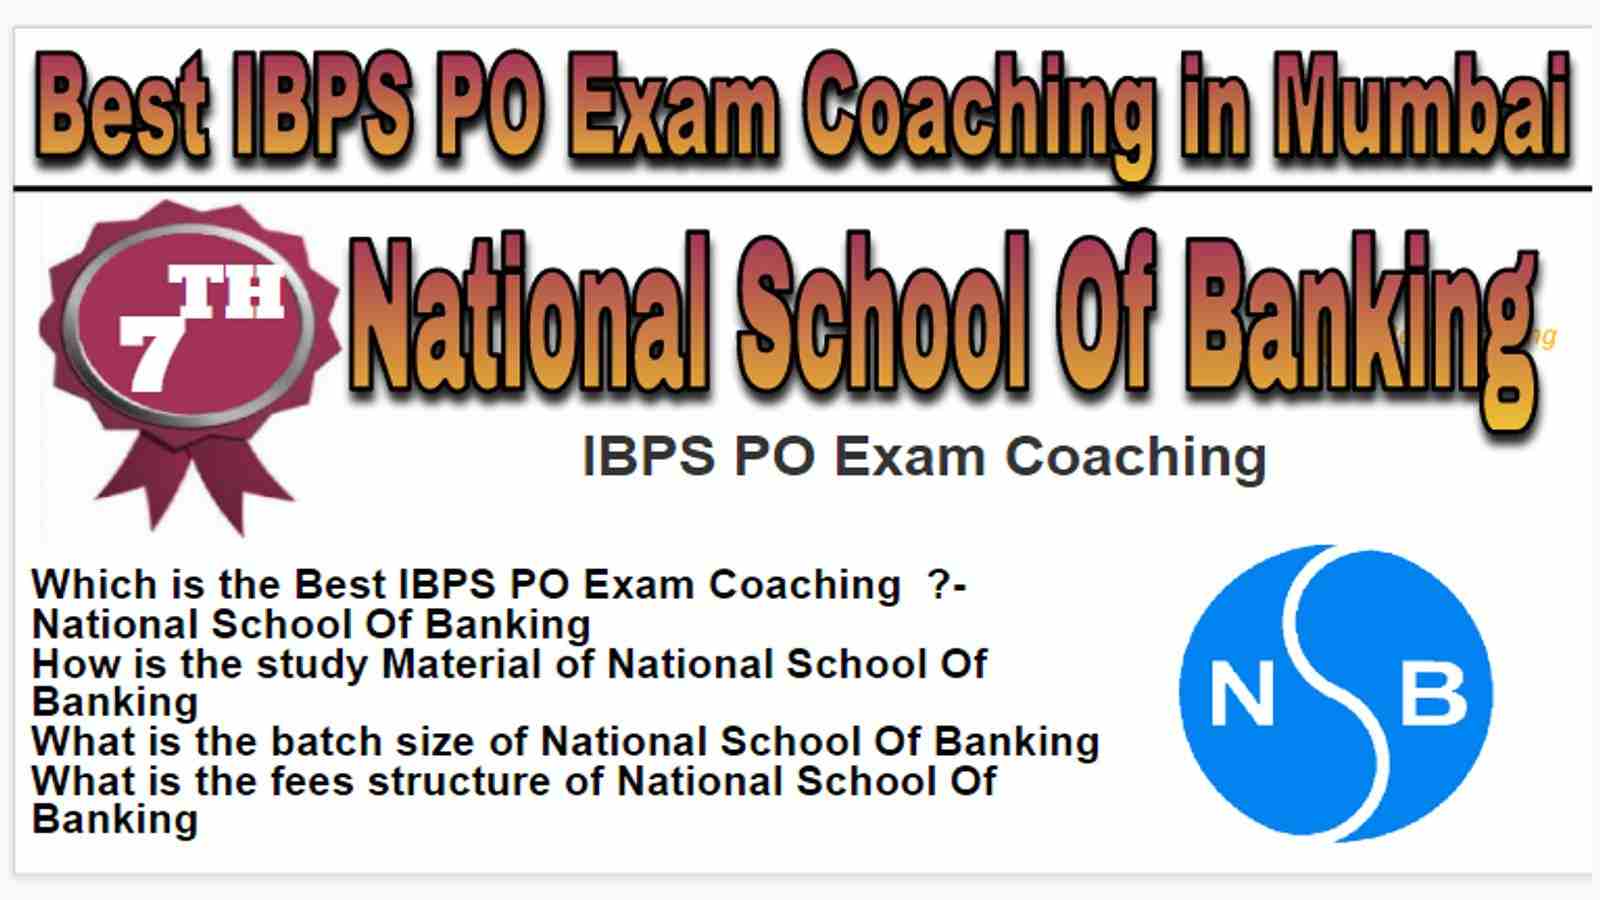 Rank 7 Best IBPS PO Exam Coaching in Mumbai